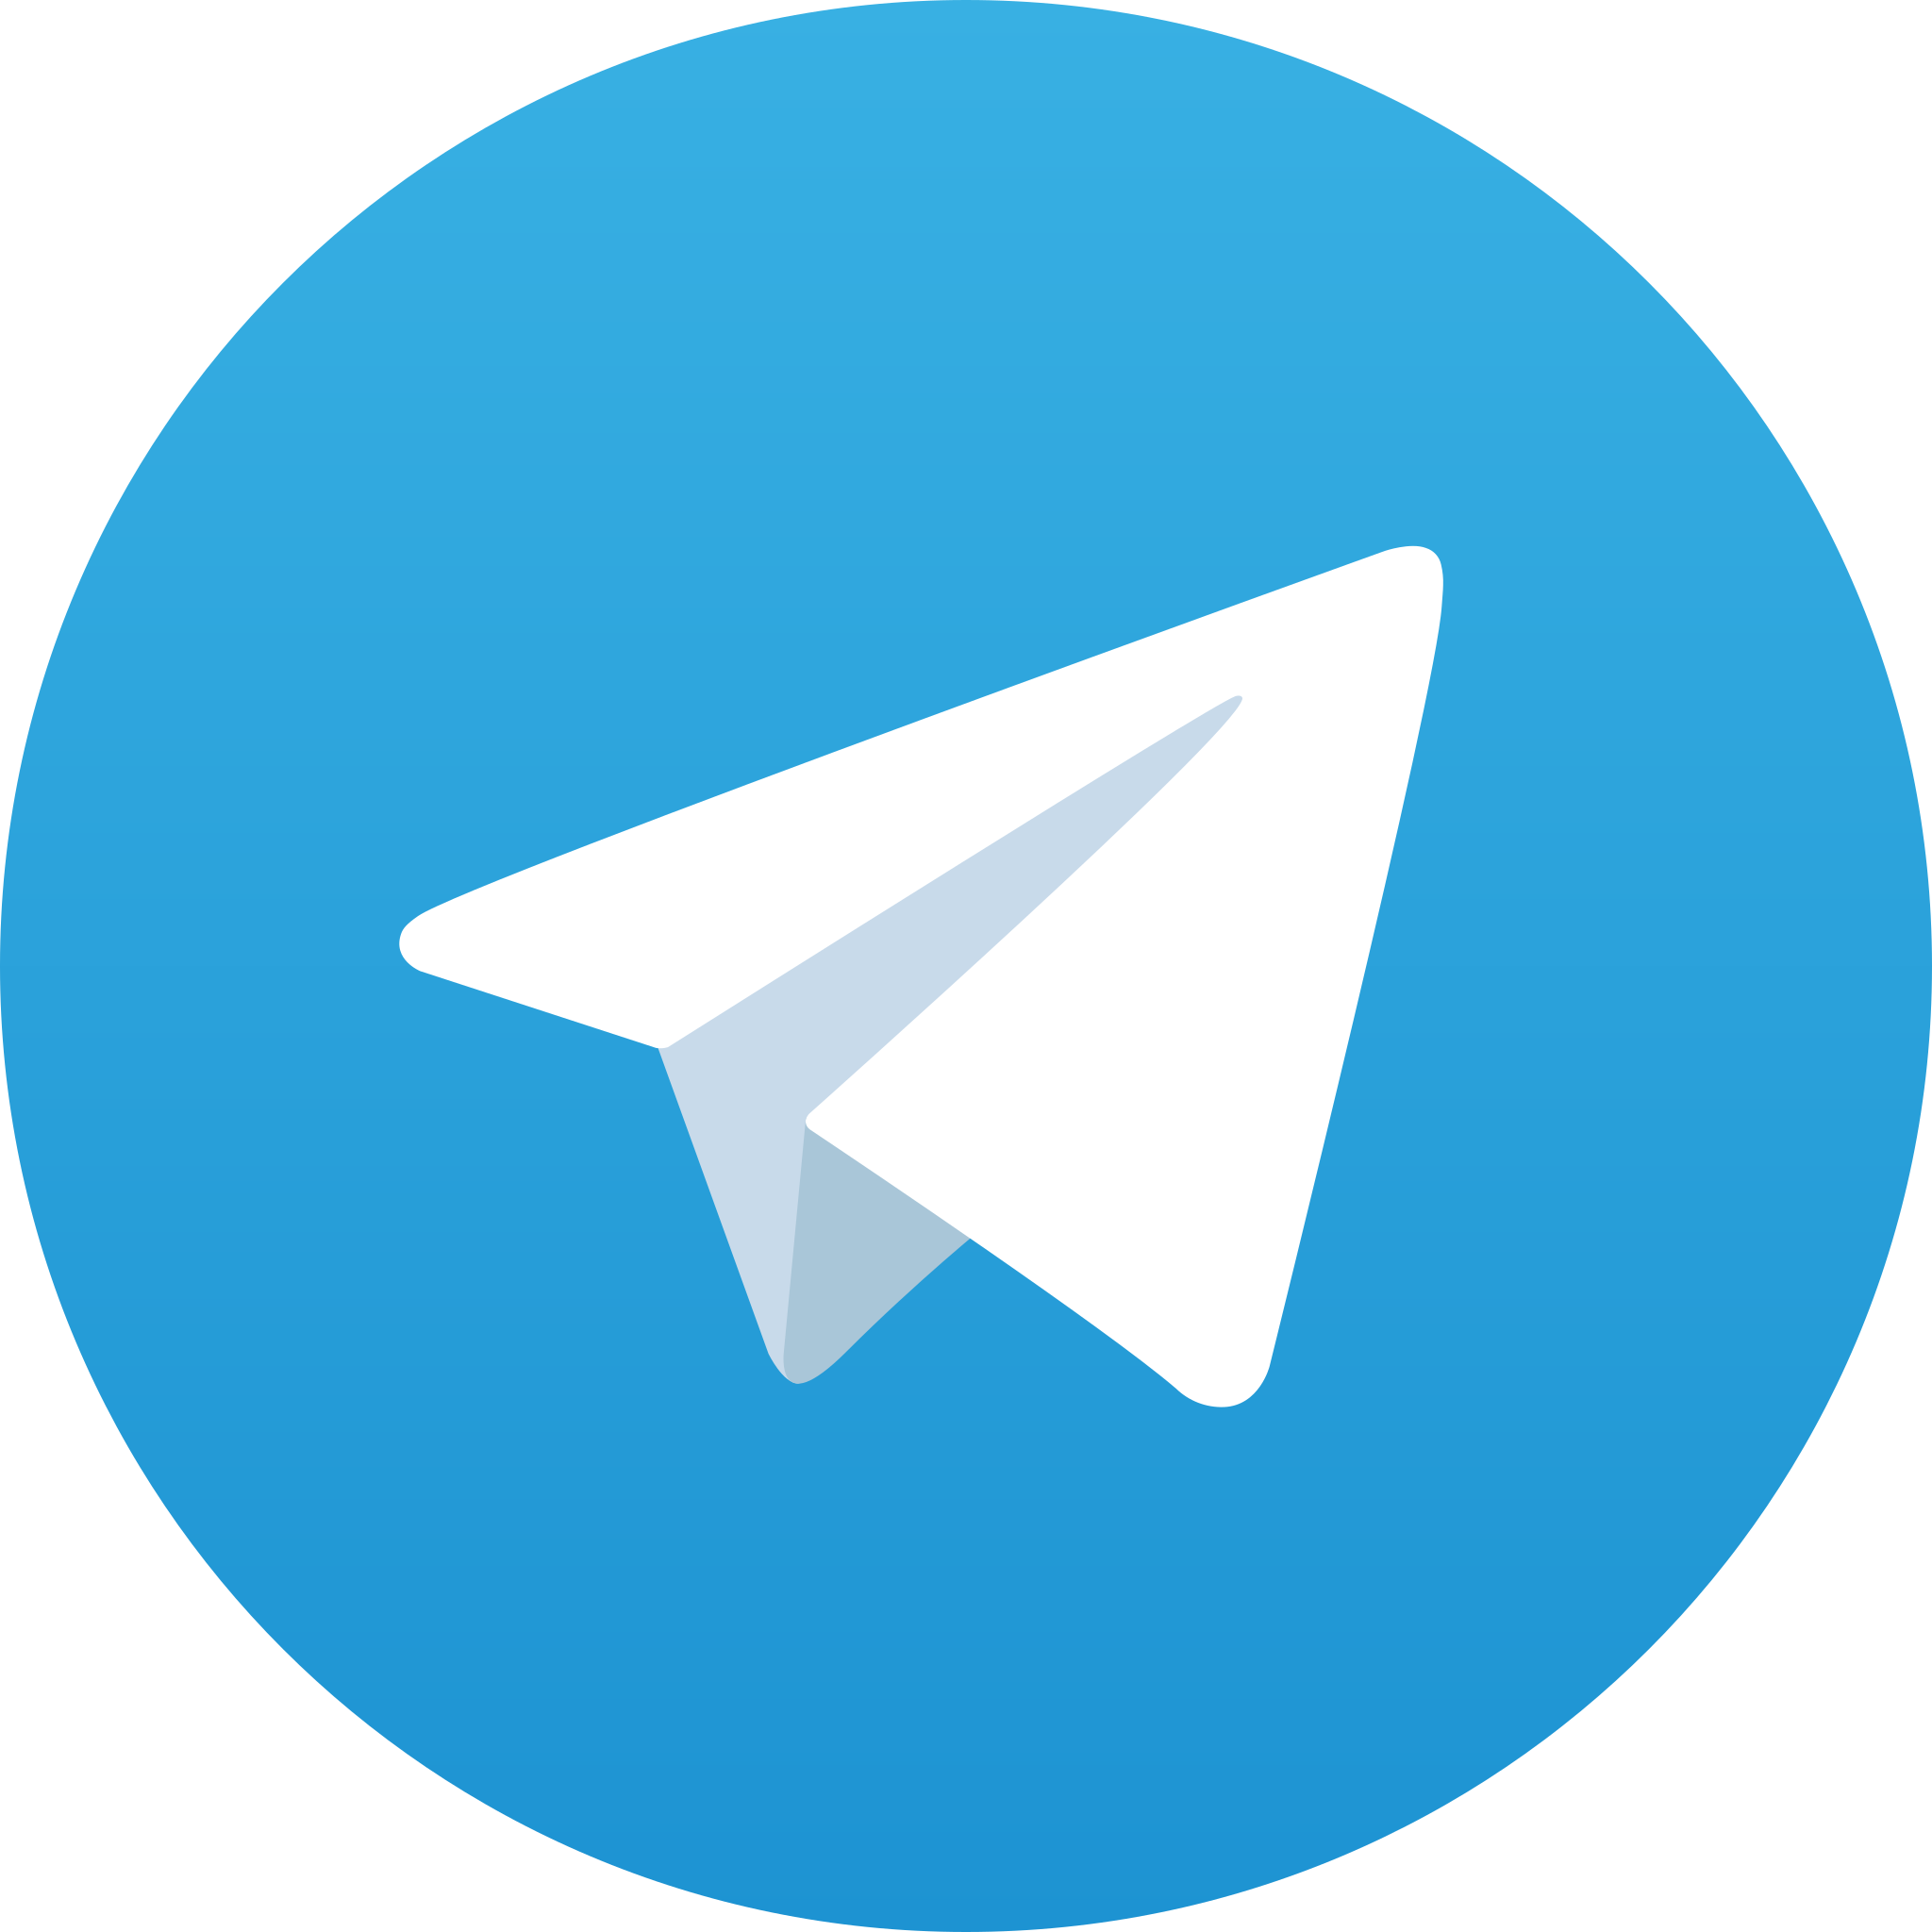 telegram paslot